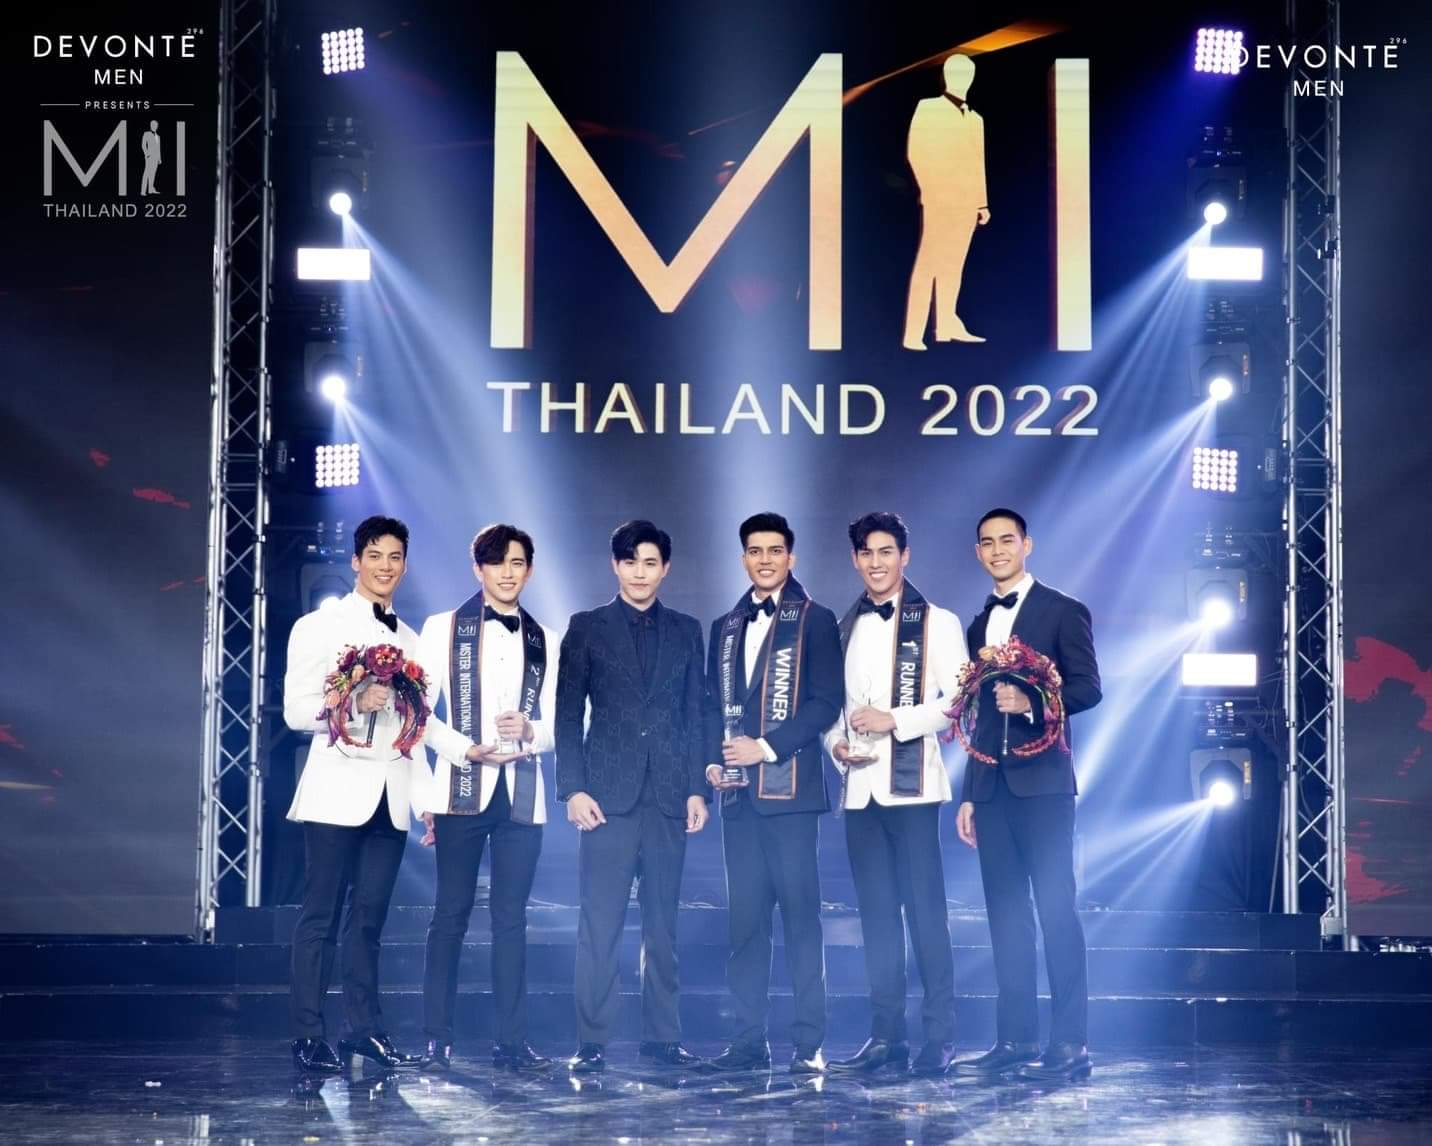 หนุ่ม ต่อ-สุรศักดิ์ เมืองแก้ว คว้าแชมป์ Devonte Presents Mister International Thailand 2022 พร้อมเป็นตัวแทนร่วมชิงตำแหน่งระดับอินเตอร์ที่ประเทศฟิลิปปินส์